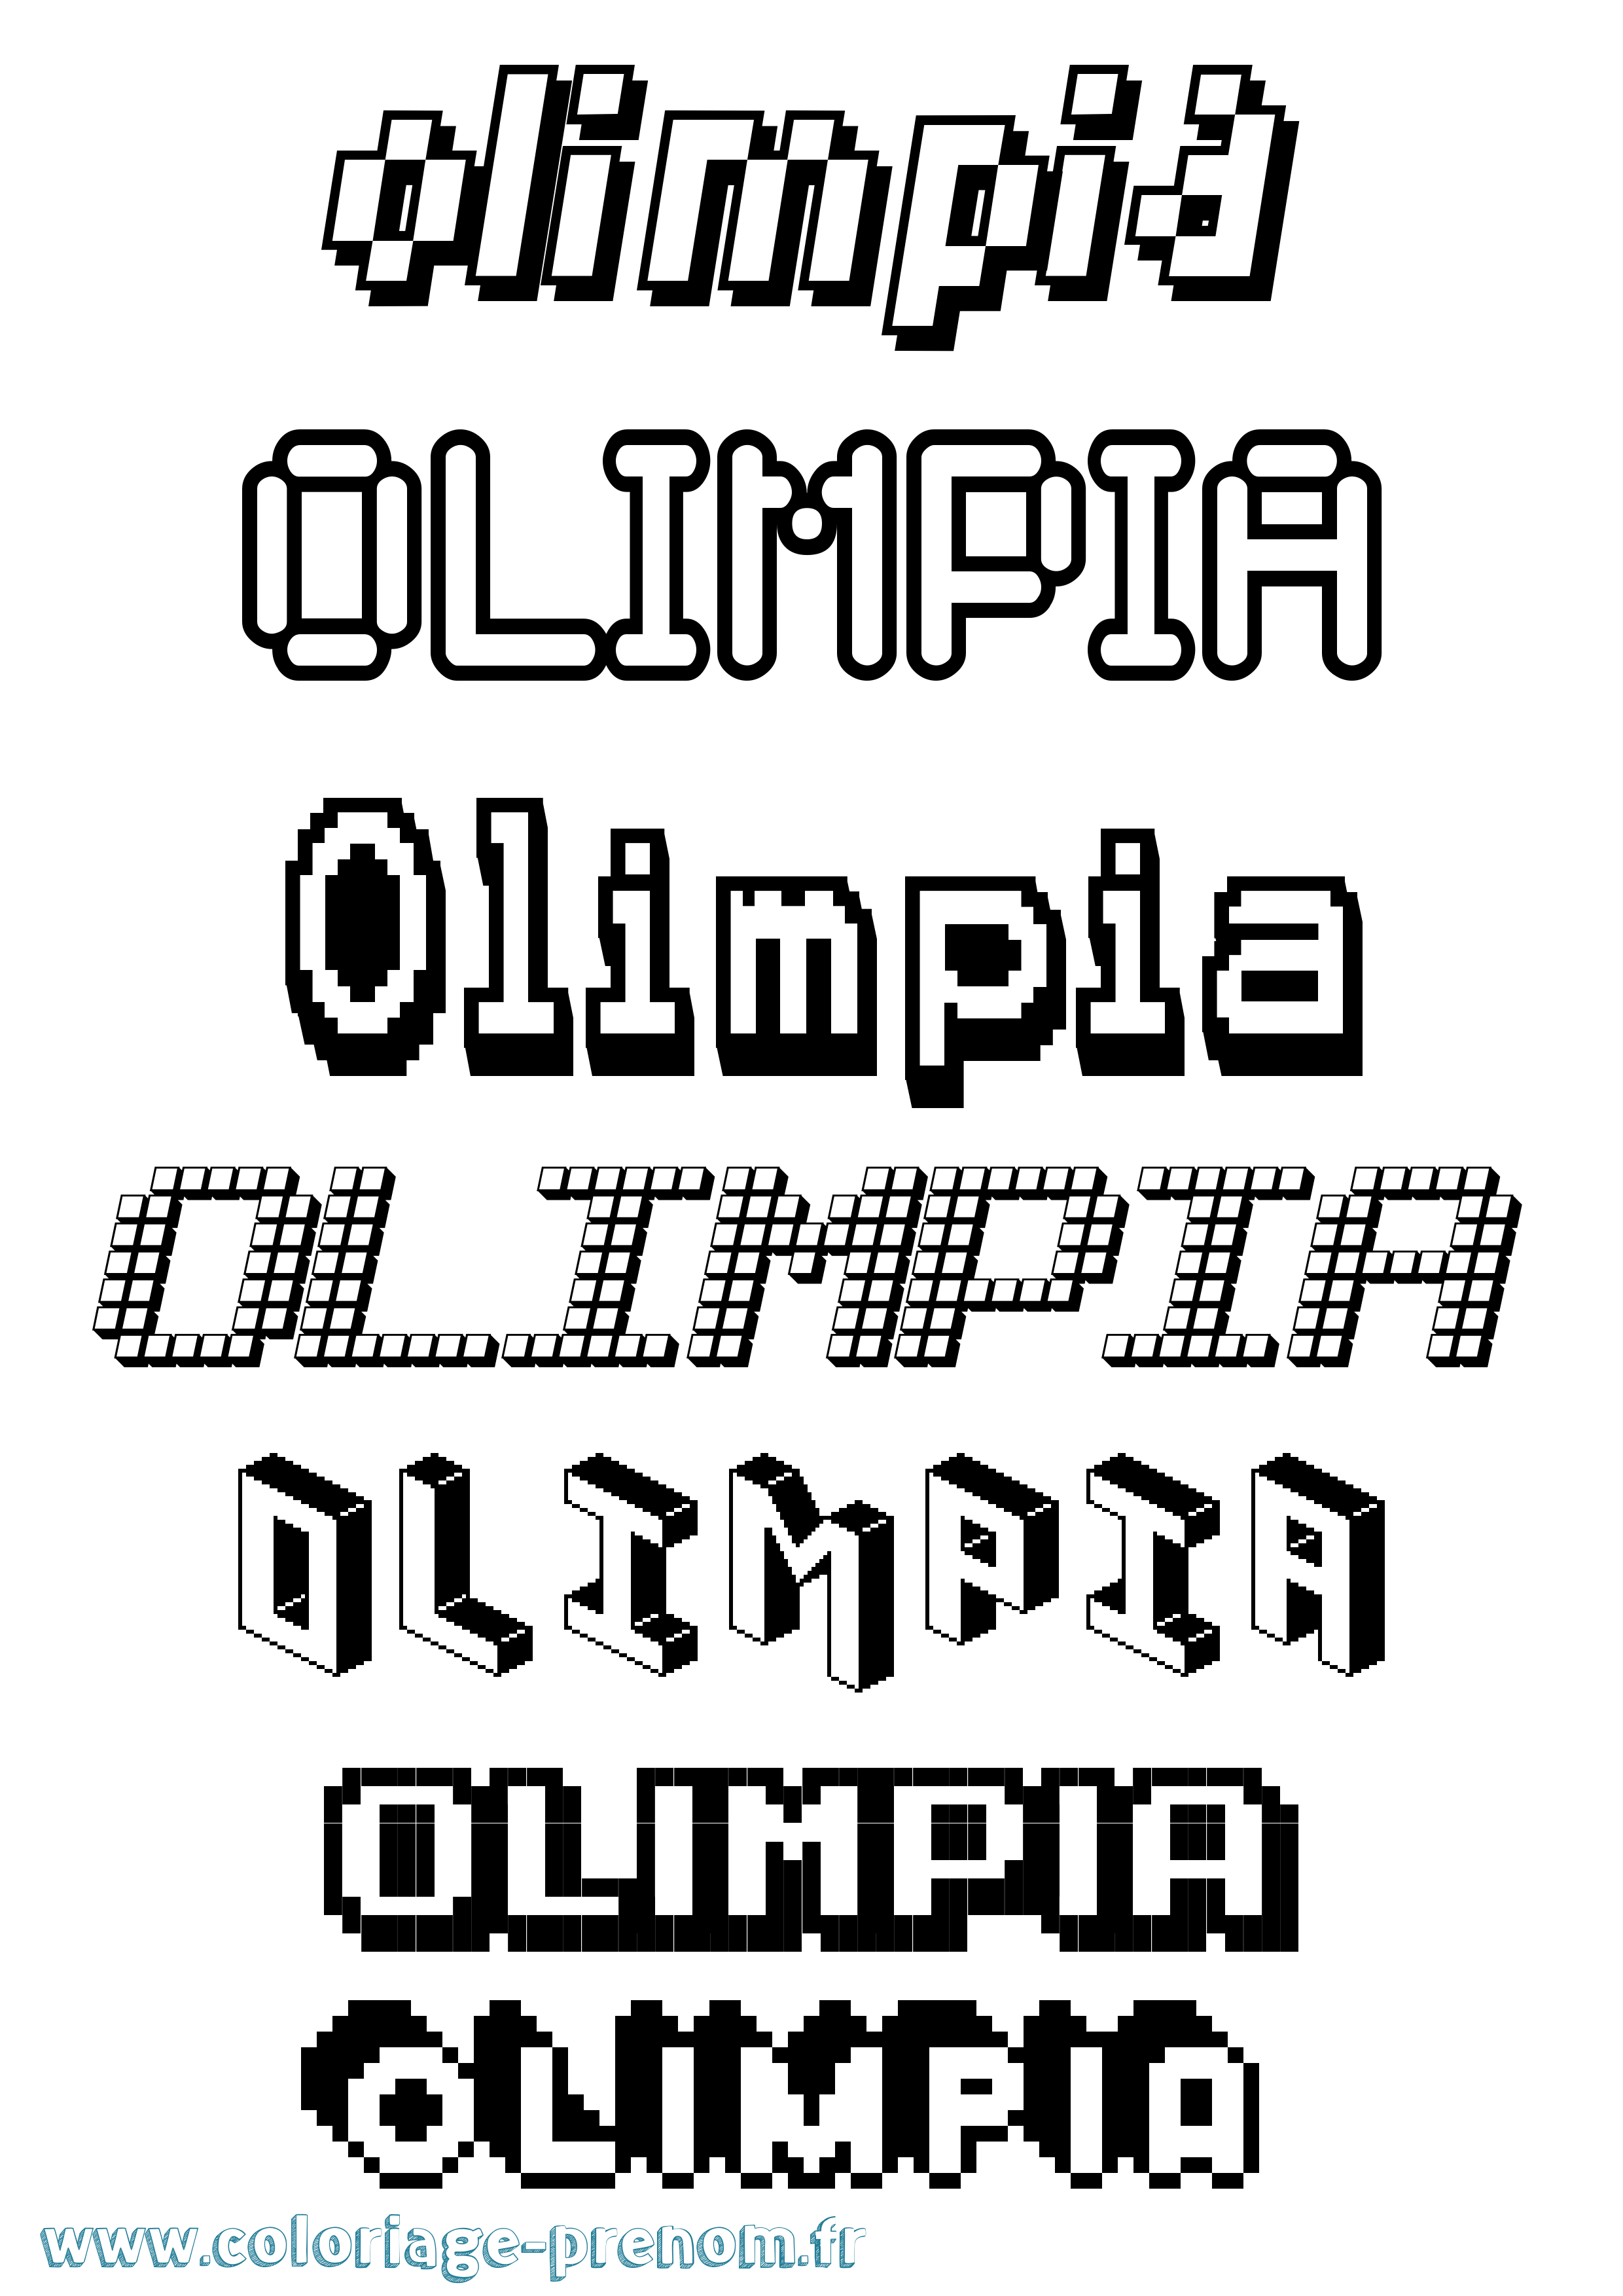 Coloriage prénom Olimpia Pixel